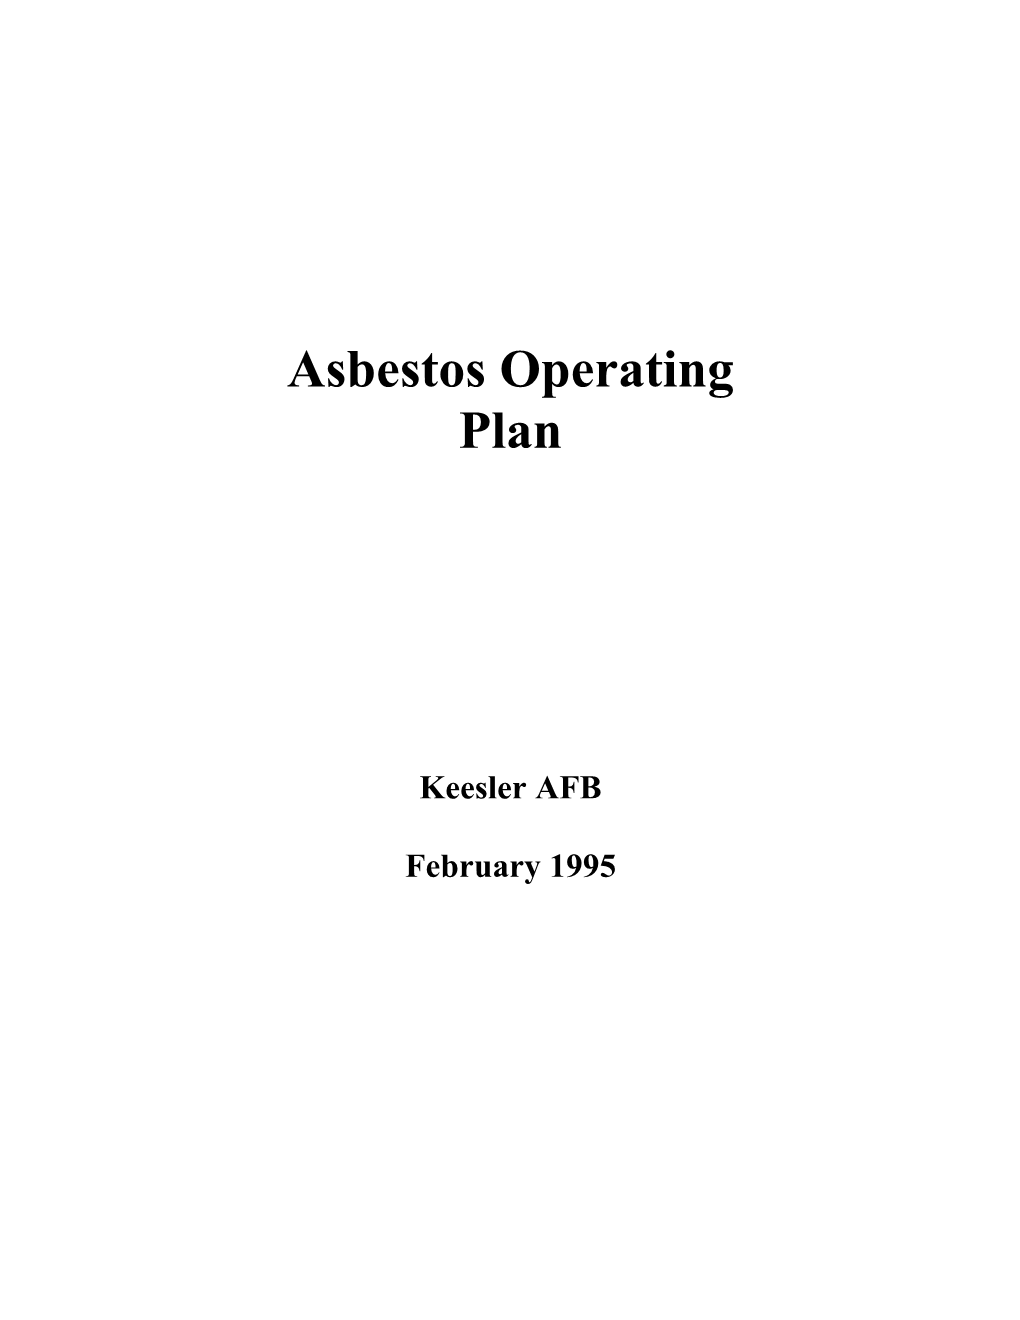 Asbestos Operating Plan